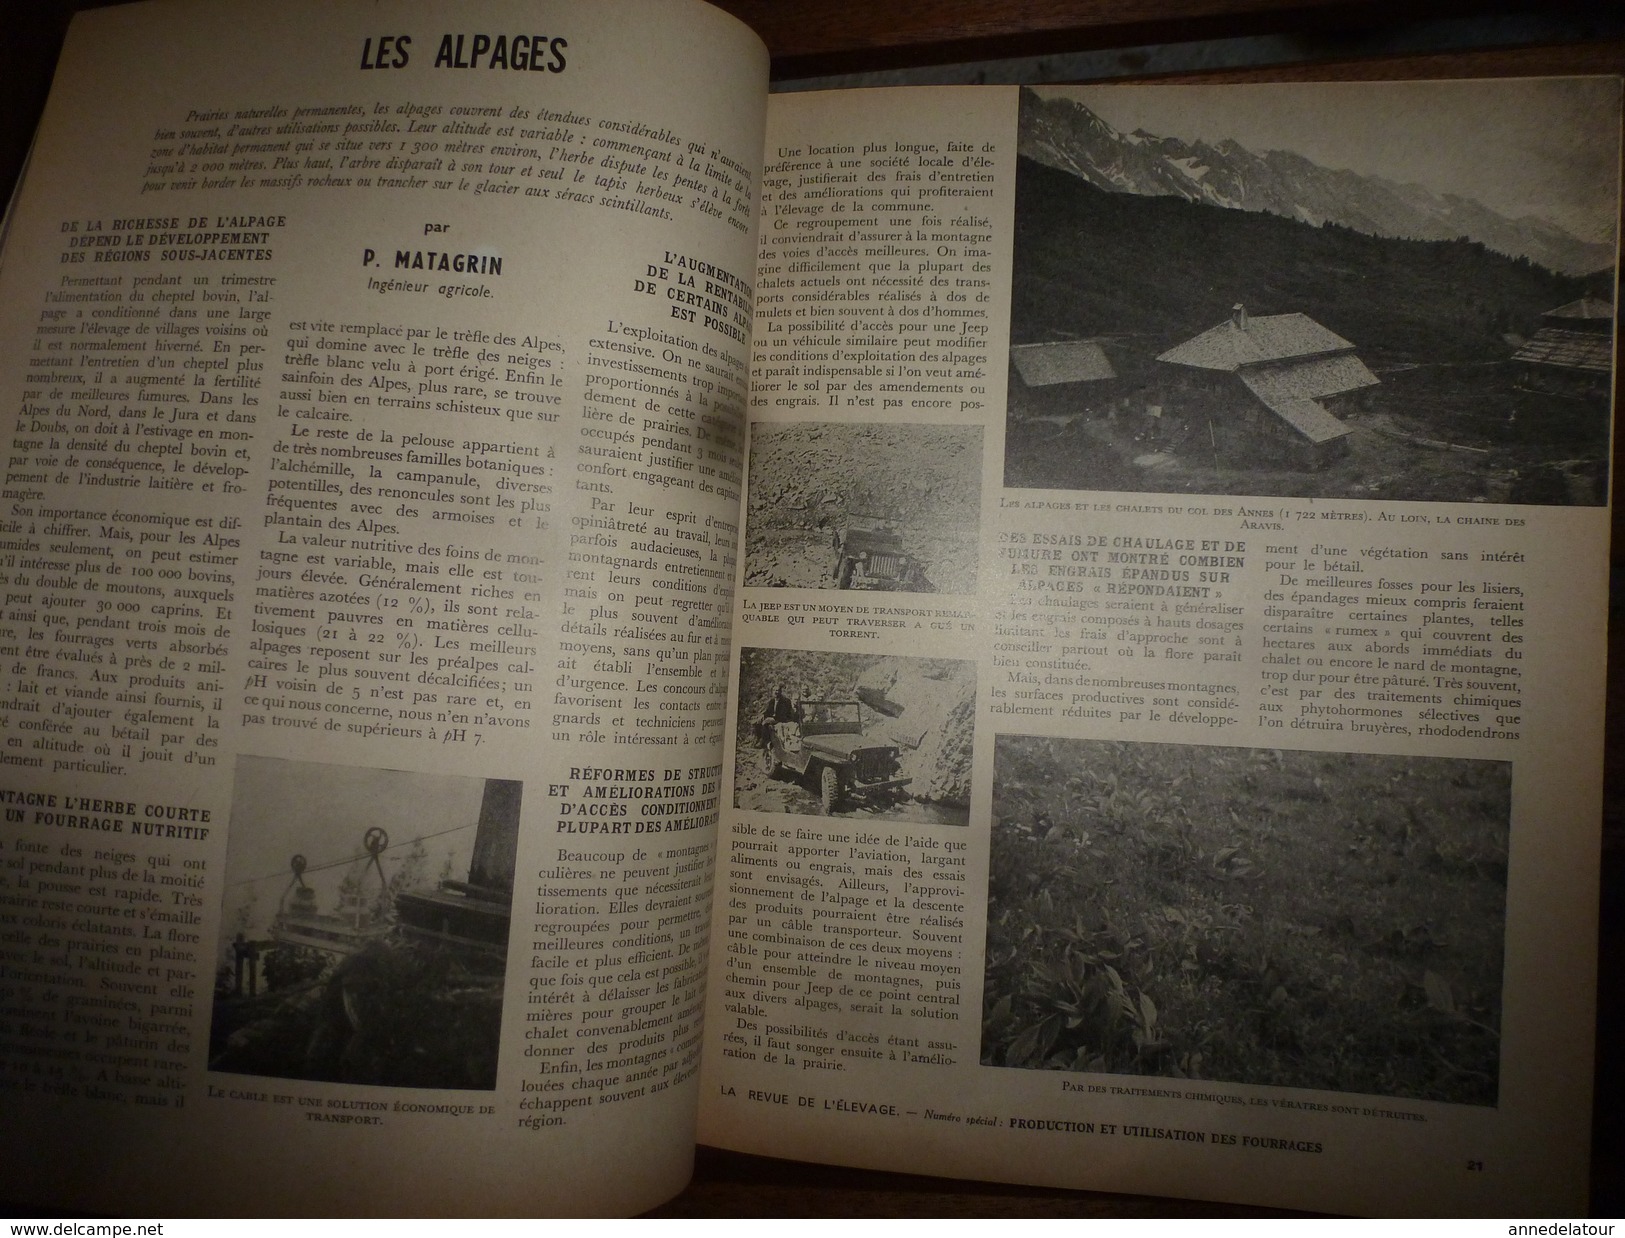 1954 LRDLE  N° SPECIAL PRODUCTION Et UTILISATION DES FOURRAGES; Alpages Aux CHALETS Du Col Des Annes à 1722 M - Animaux